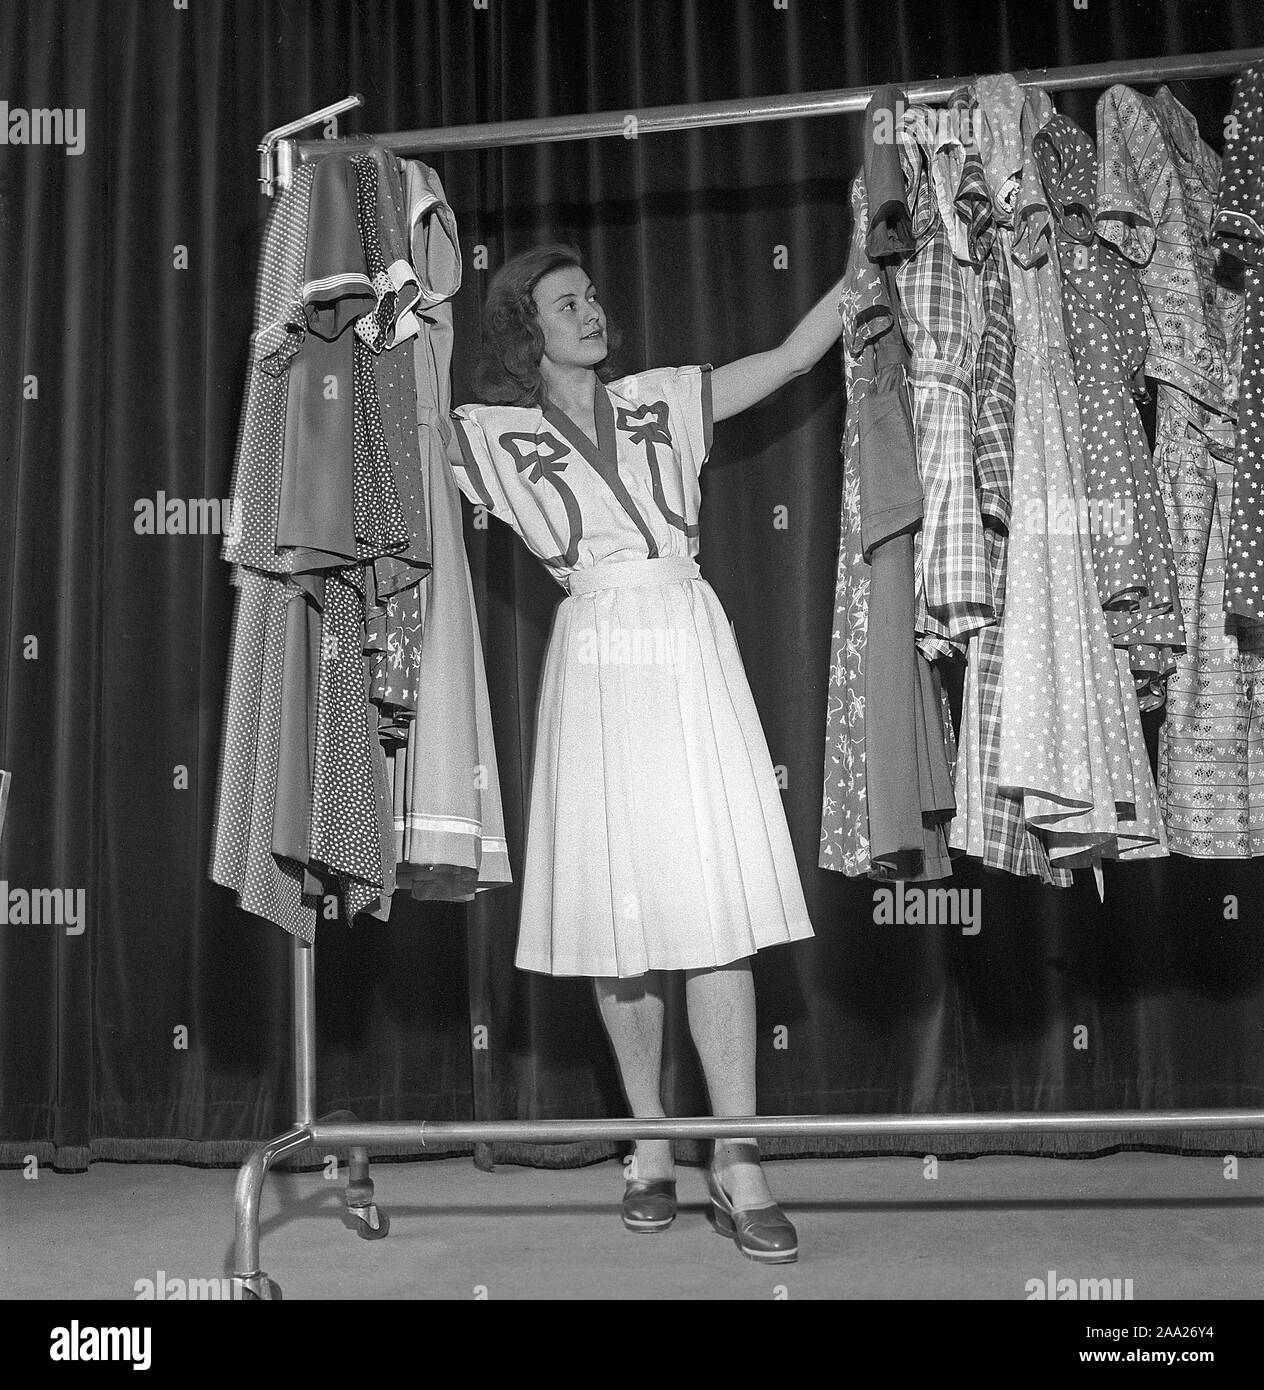 La mode féminine dans les années 40. Une jeune femme en costume typique des années 40 est debout et à l'été à différentes robes. La Suède 1945 Kristoffersson Ref R129-1 Banque D'Images